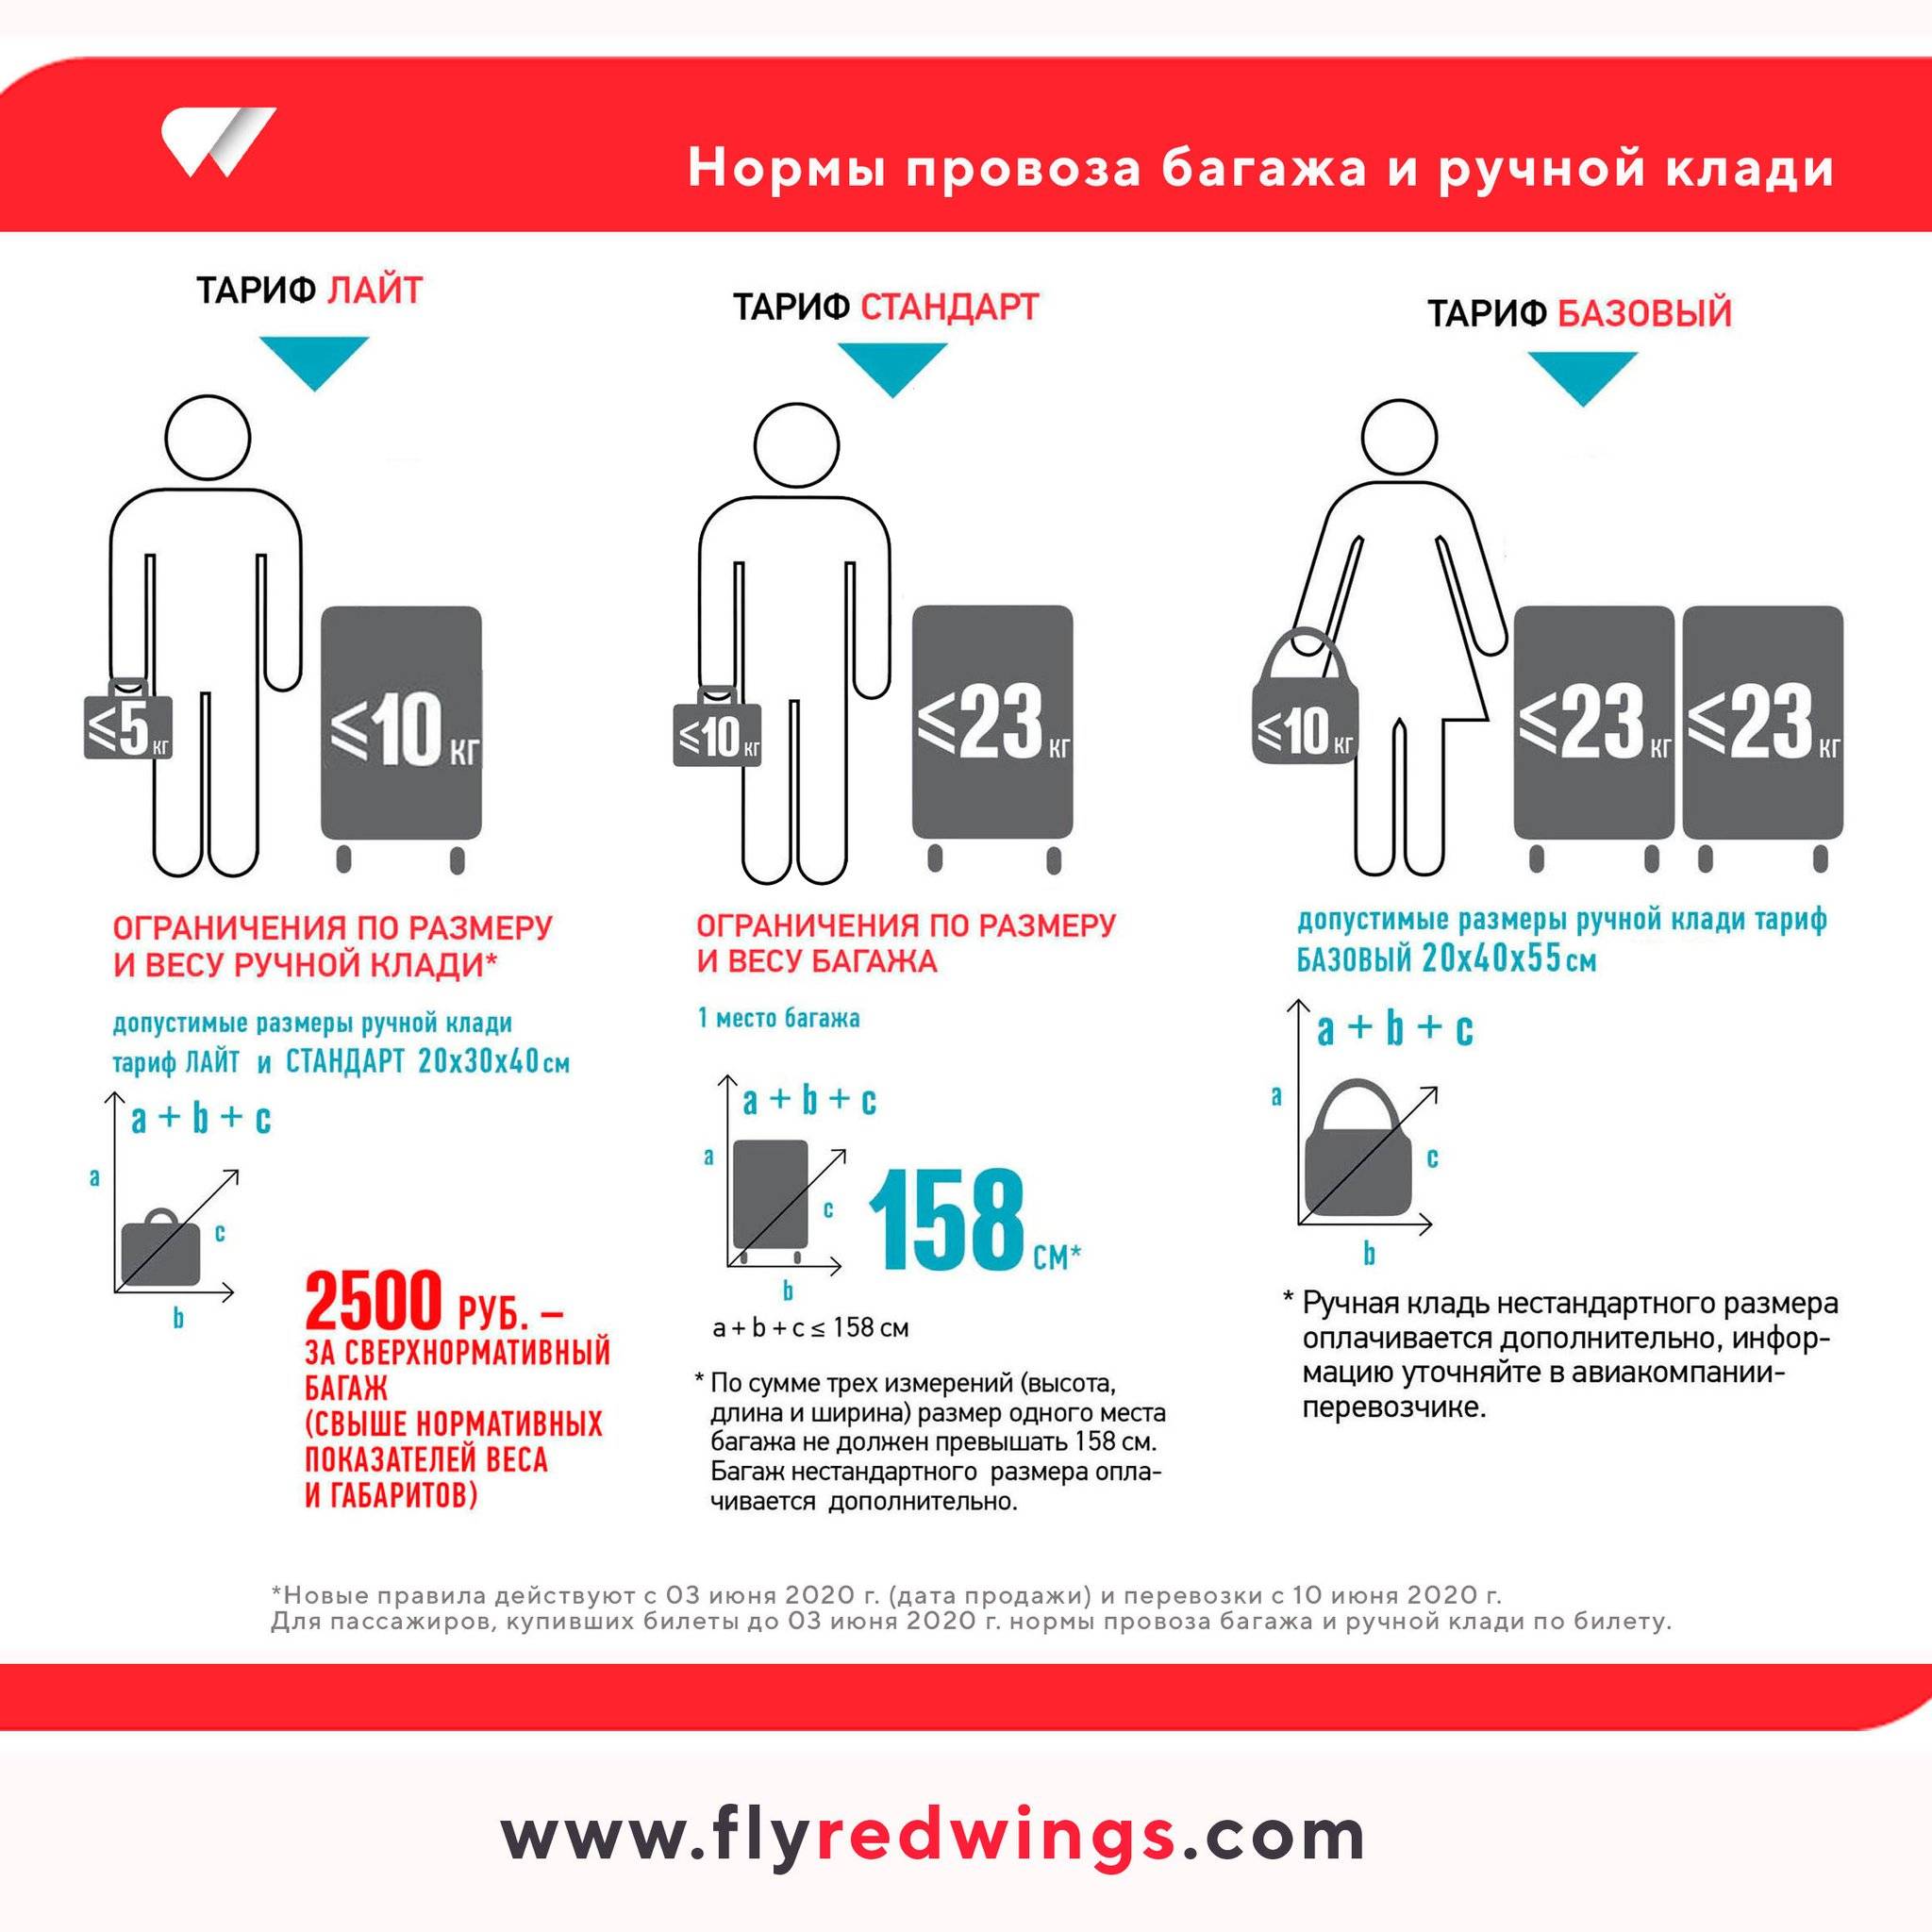 Ред вингс: правила перевозки багажа и ручной клади в самолете